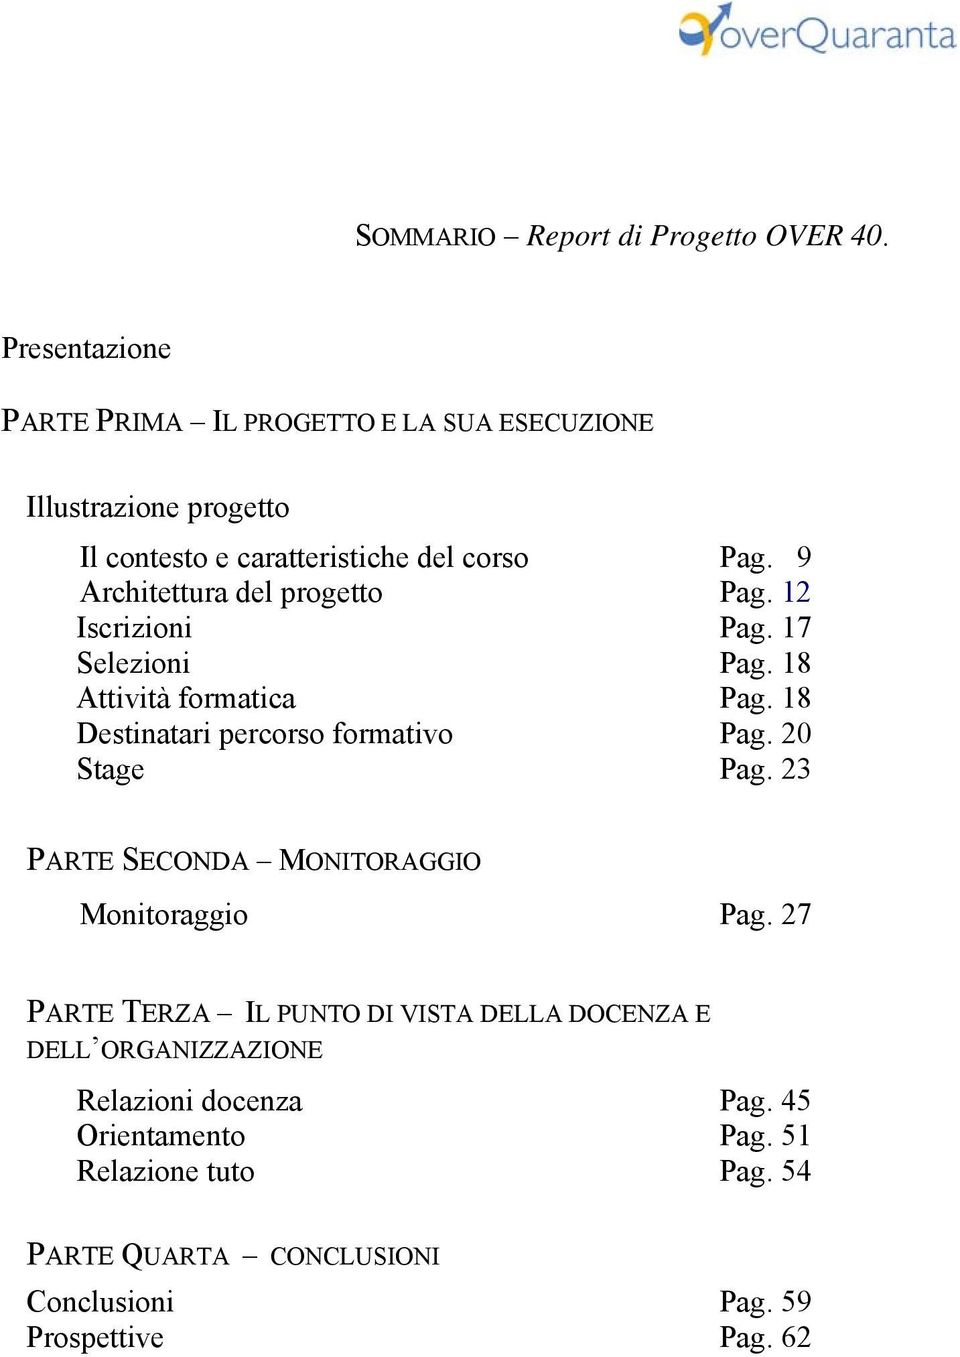 0900 Architettura del progetto Pag. 12 Iscrizioni Pag. 17 Selezioni Pag. 180 Attività formatica Pag. 18 Destinatari percorso formativo Pag.